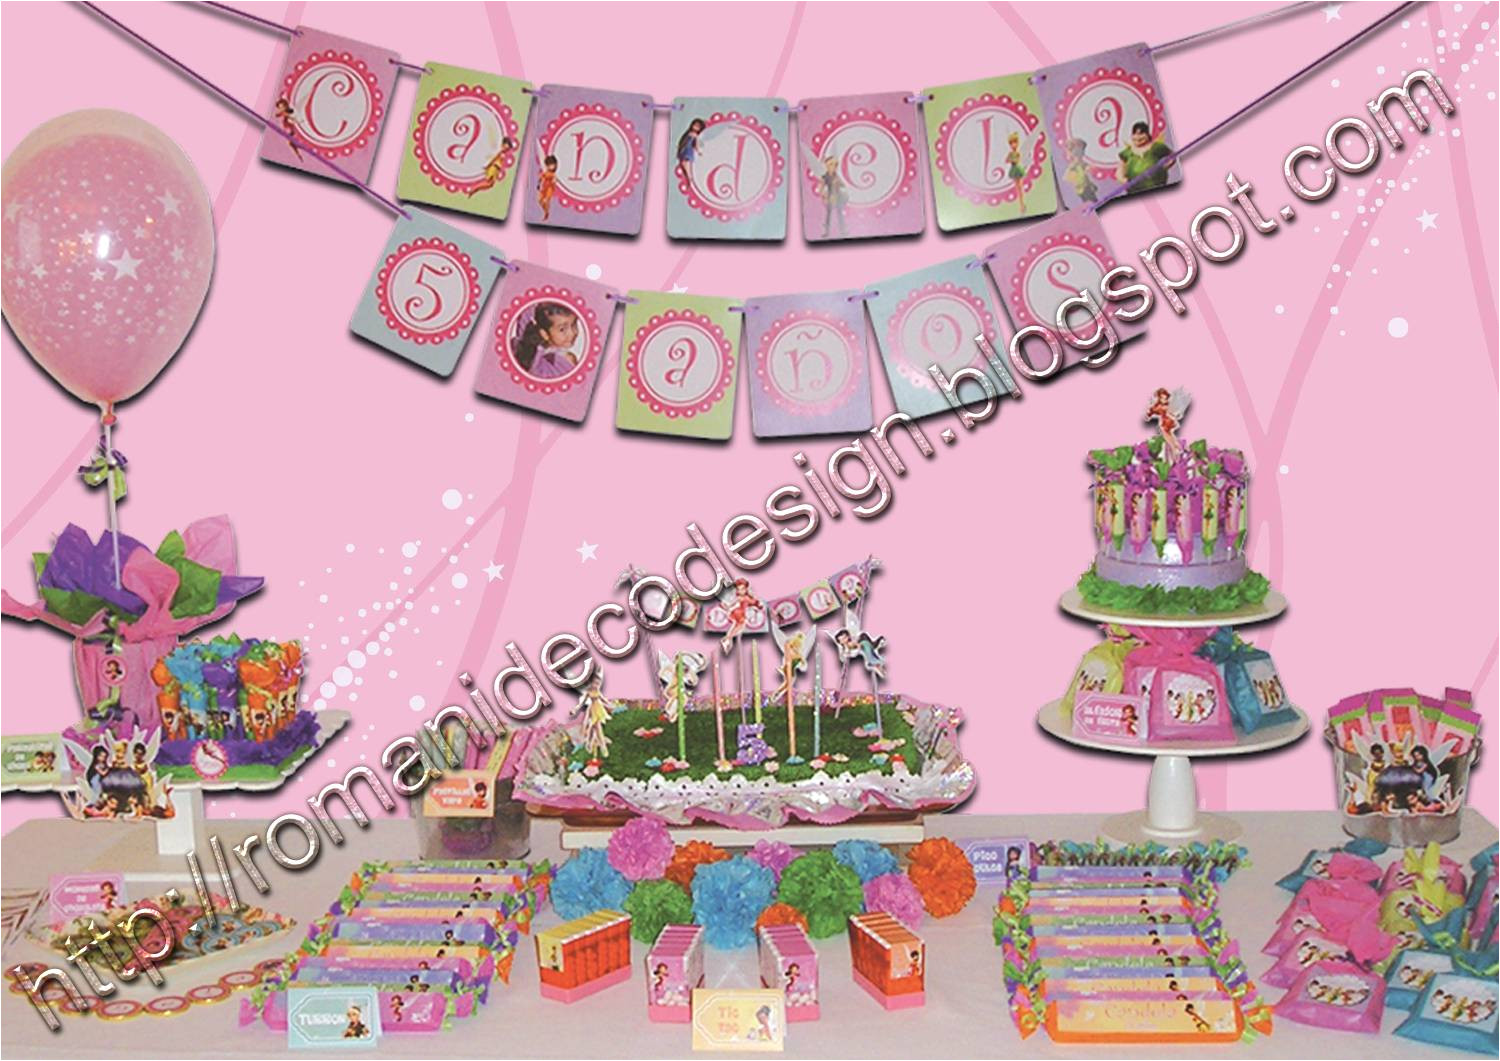 en la guirnalda en los souvenirs en los centro de mesa con globos y en la torta el resultado un cumple muy colorido en tonos bien femeninos